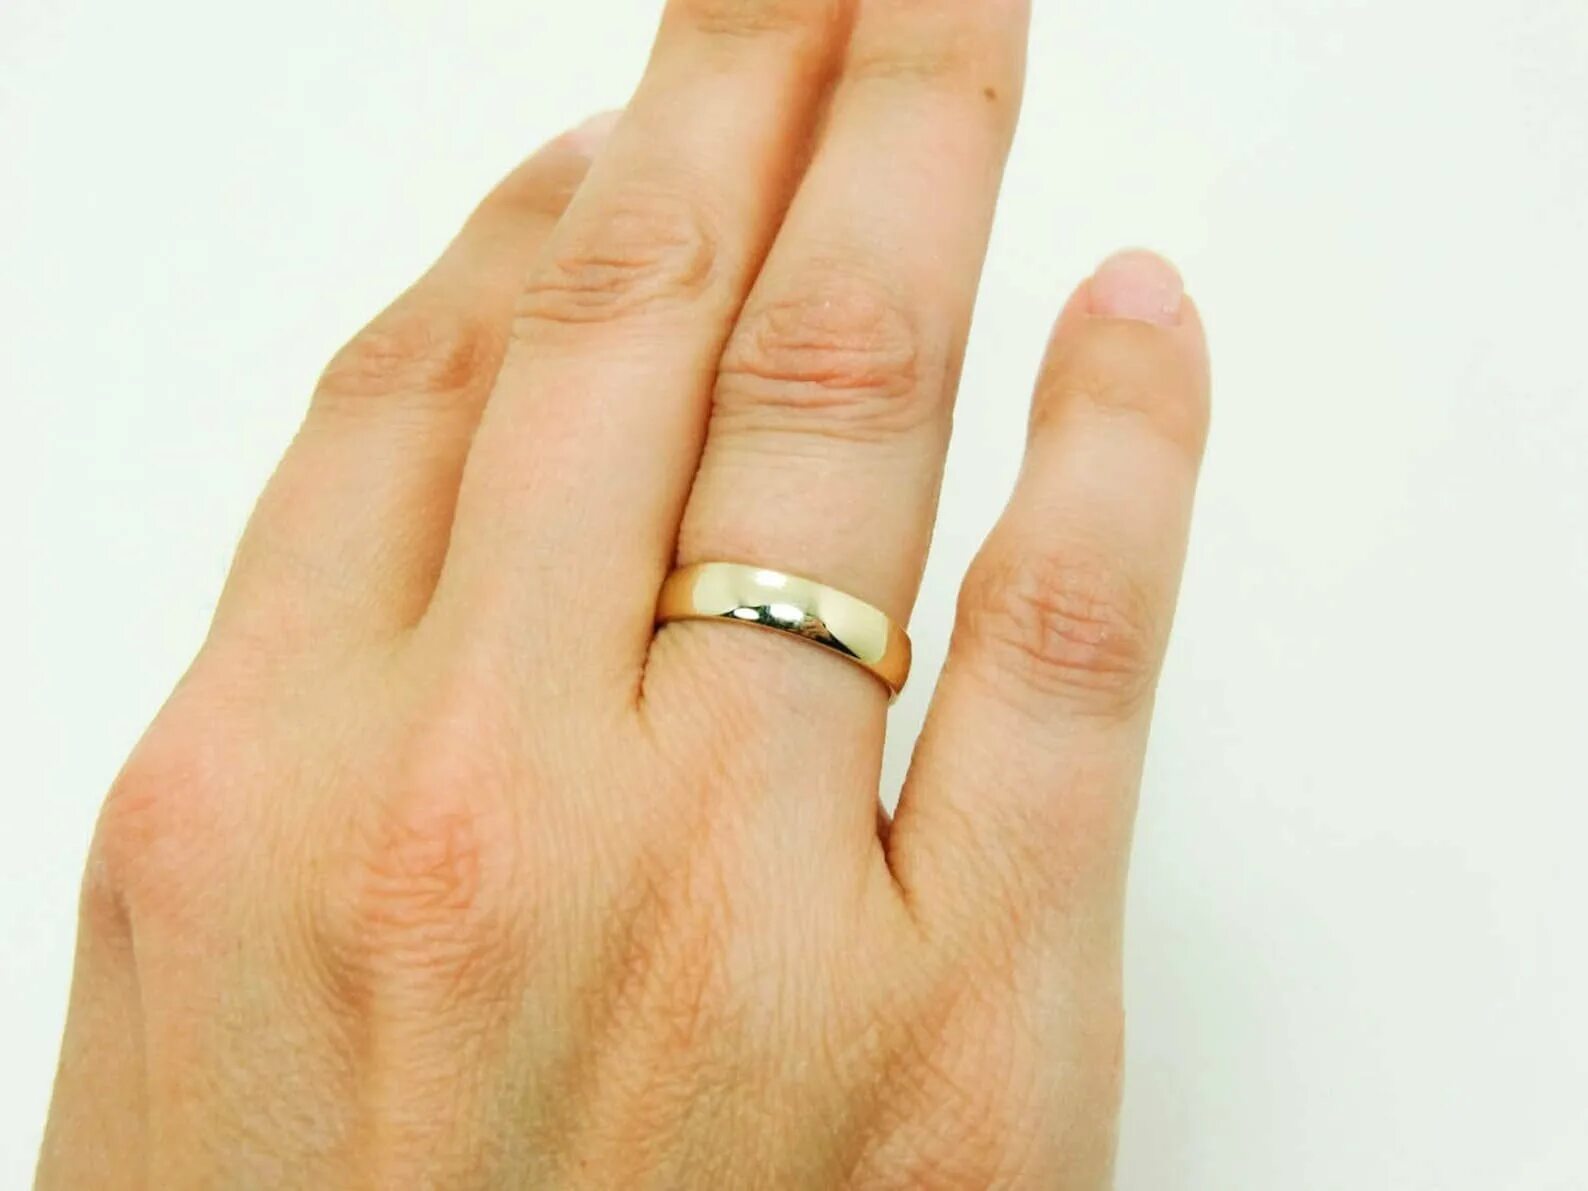 Обручальное кольцо на пальце. Мужские обручальные кольца на руке. Мужское обручальное кольцо на пальце. Кольцо на палец мужское. Кольцо будь проще